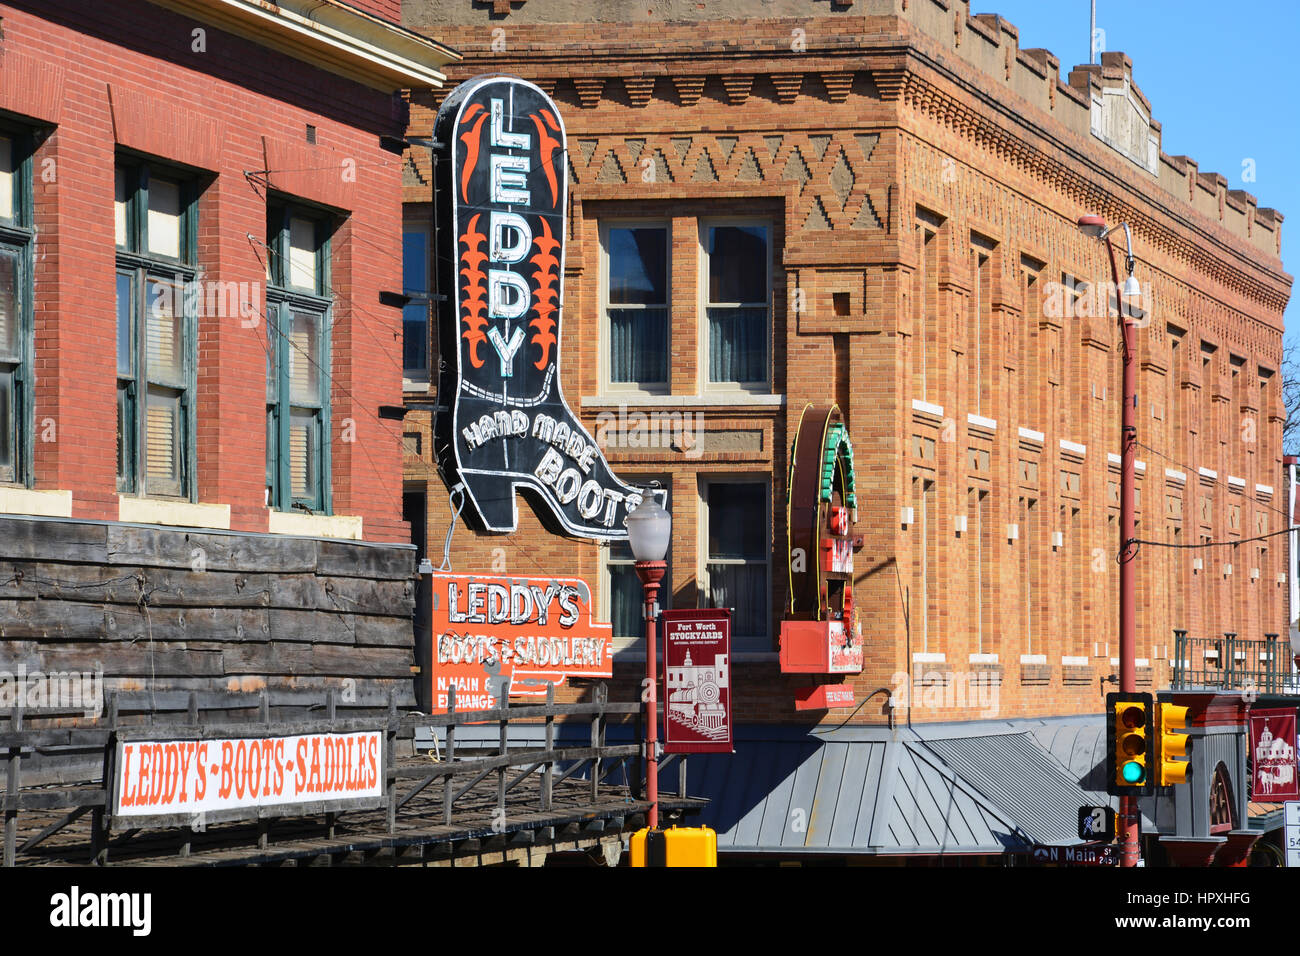 Leddy's es conocida por la producción de botas y monturas artesanales en Texas desde 1922 y se ha mantenido en un almacén en el distrito de Fort Worth Corral desde 1941. Foto de stock